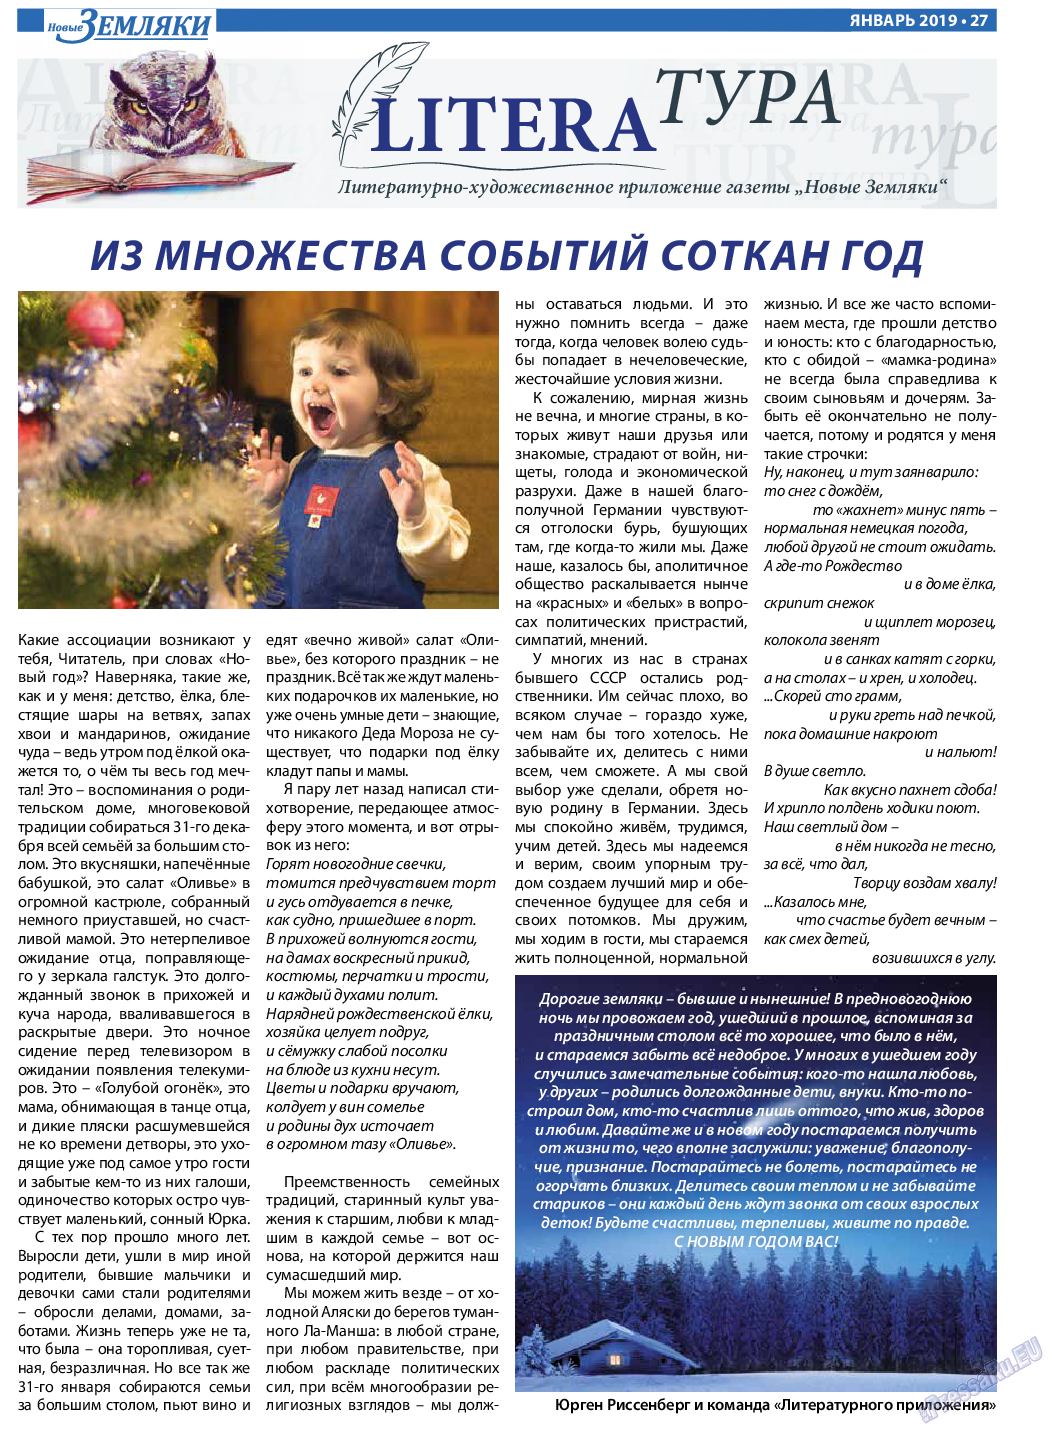 Новые Земляки (газета). 2019 год, номер 1, стр. 27